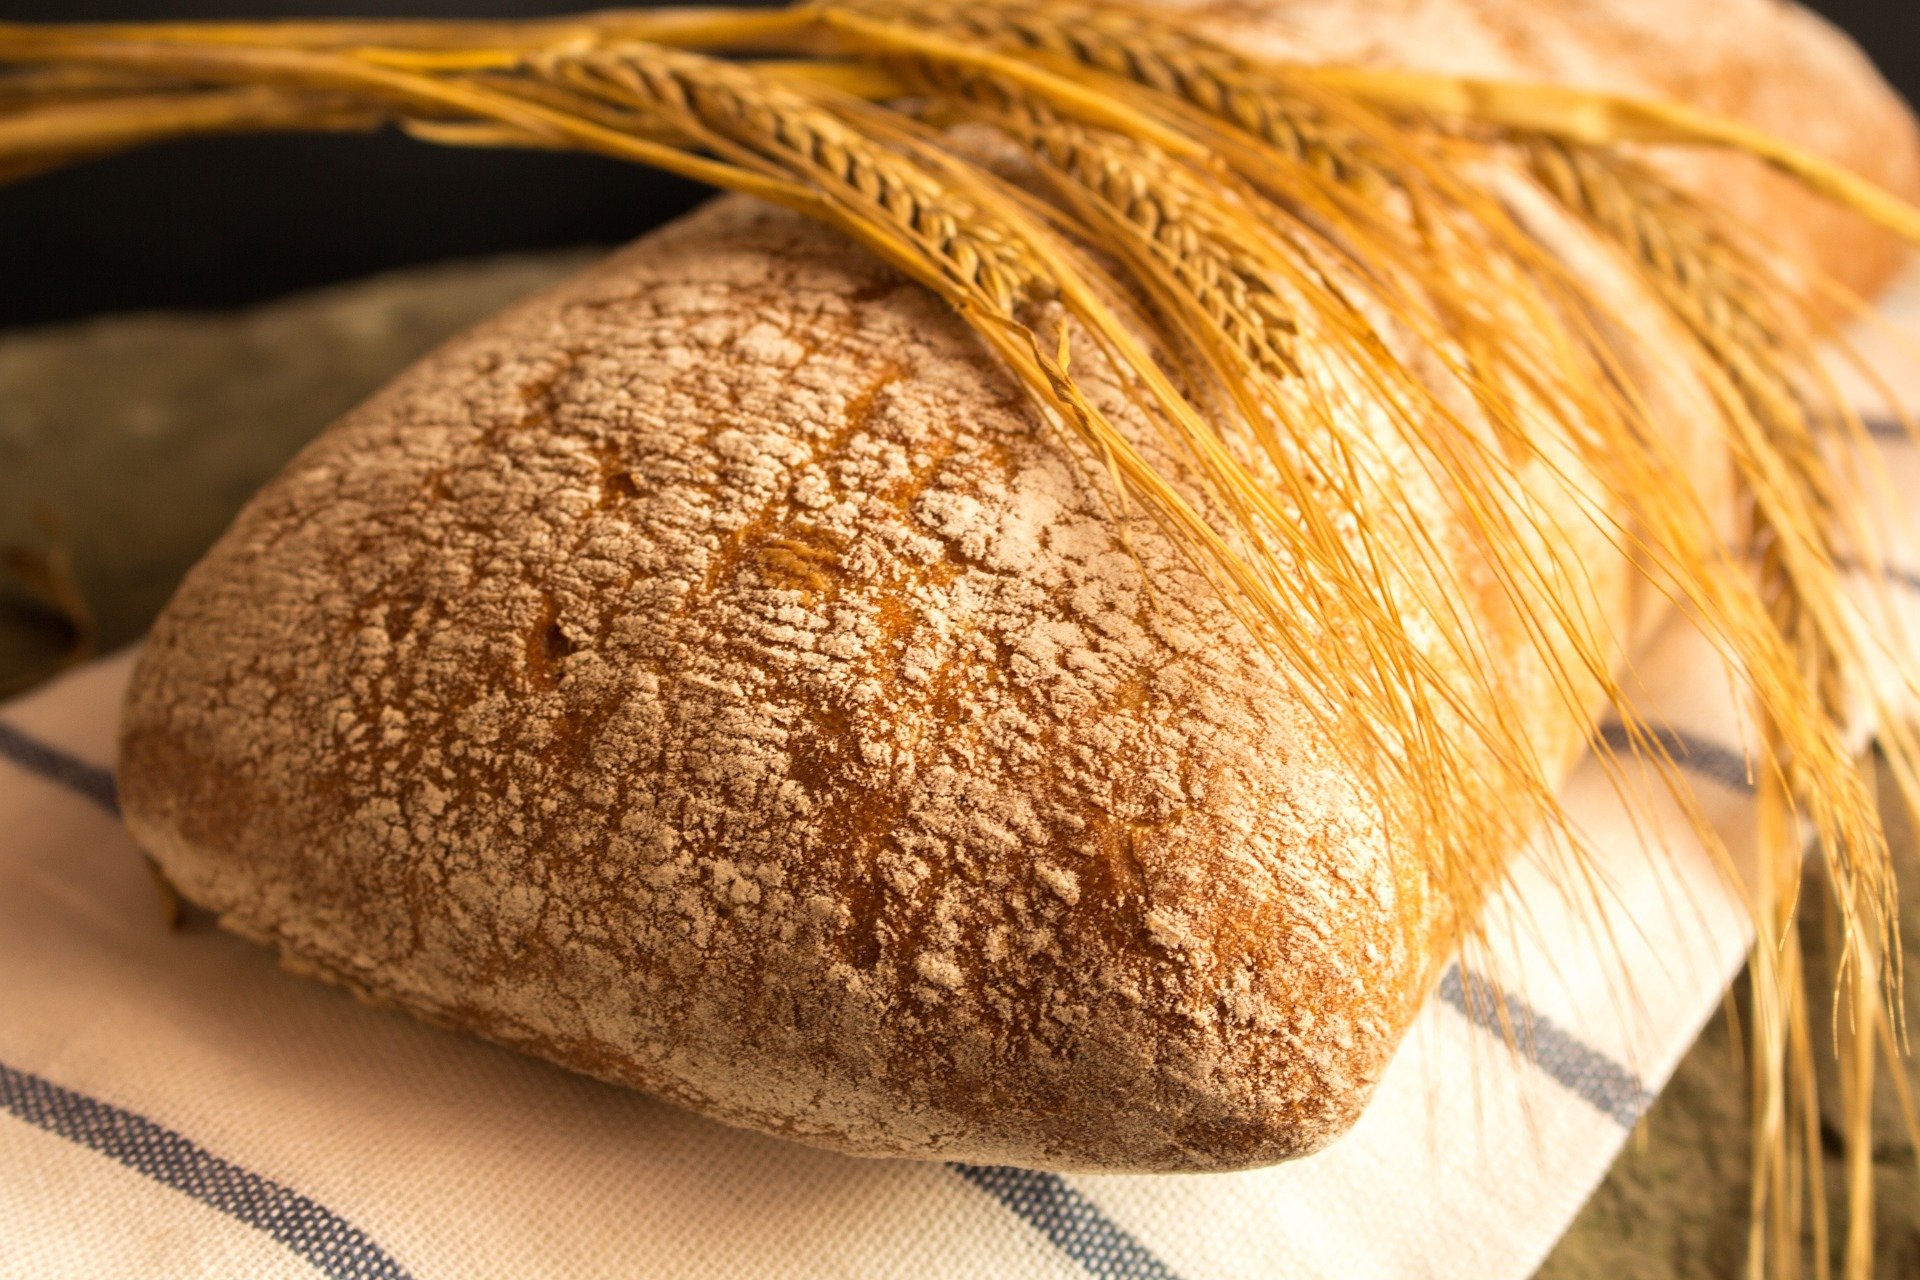 na obrazku kłosy zboża połozone na chlebie